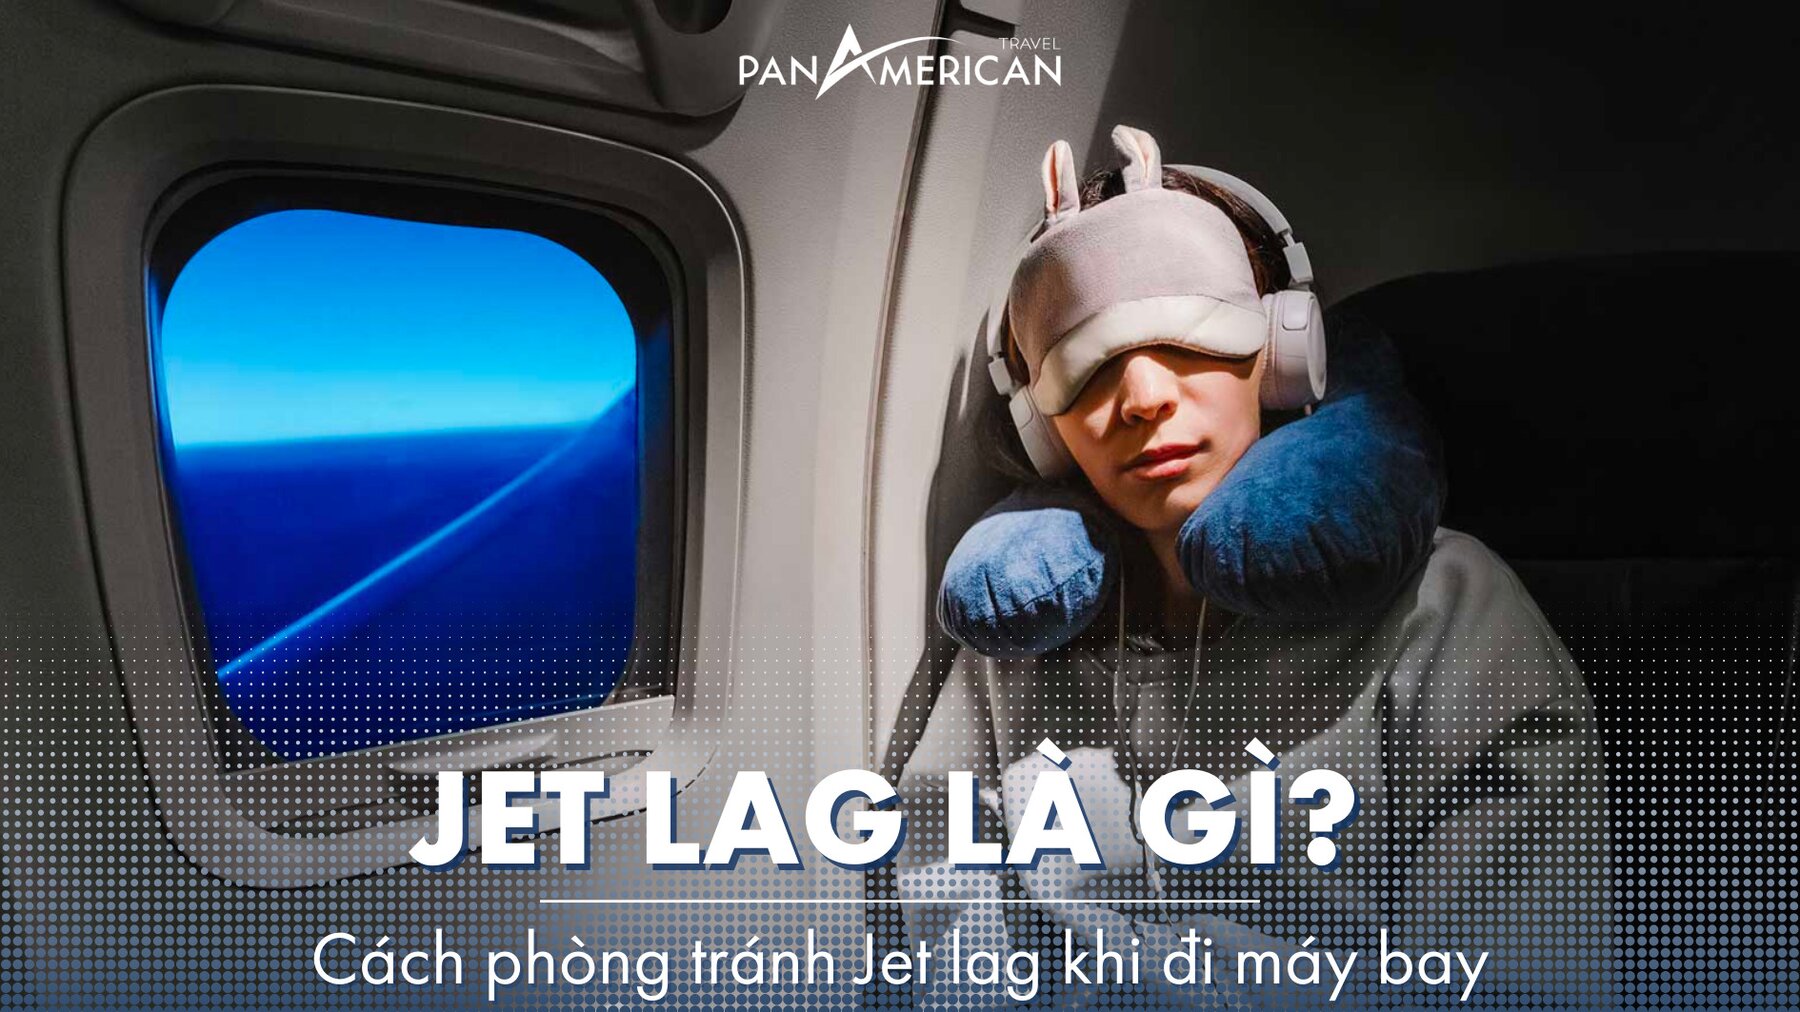 Jet lag là gì? Cách phòng tránh Jet lag khi đi máy bay